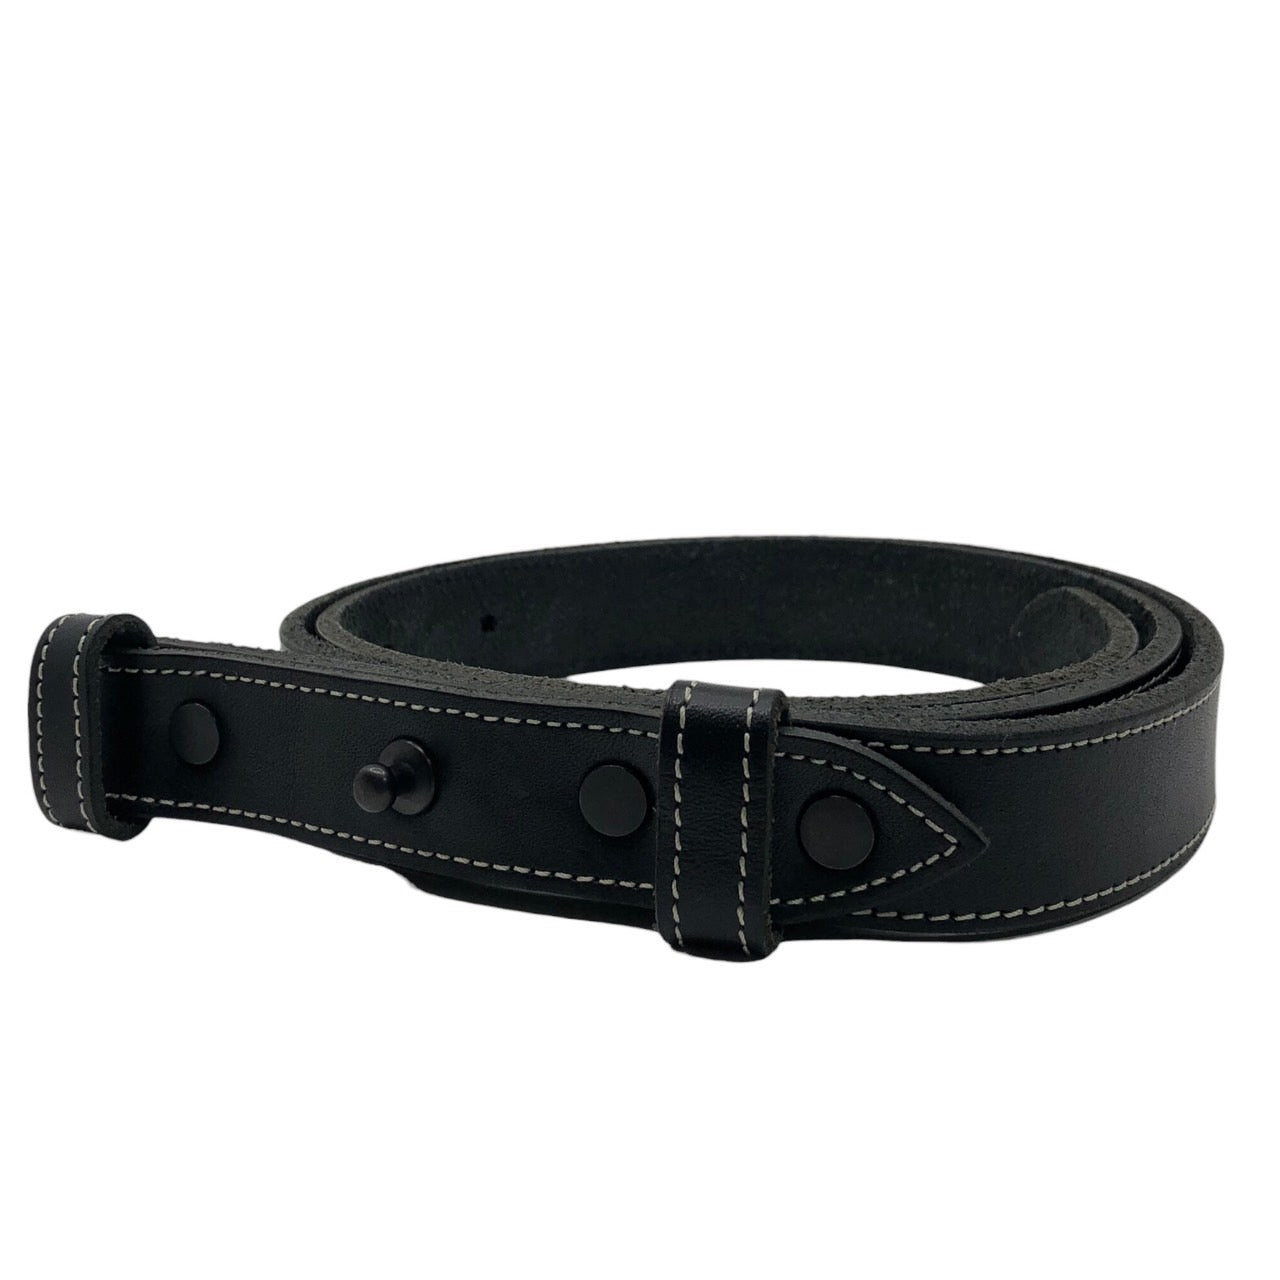 SUNSEA(サンシー) buckleless leather belt バックルレス レザー ベルト ブラック 34